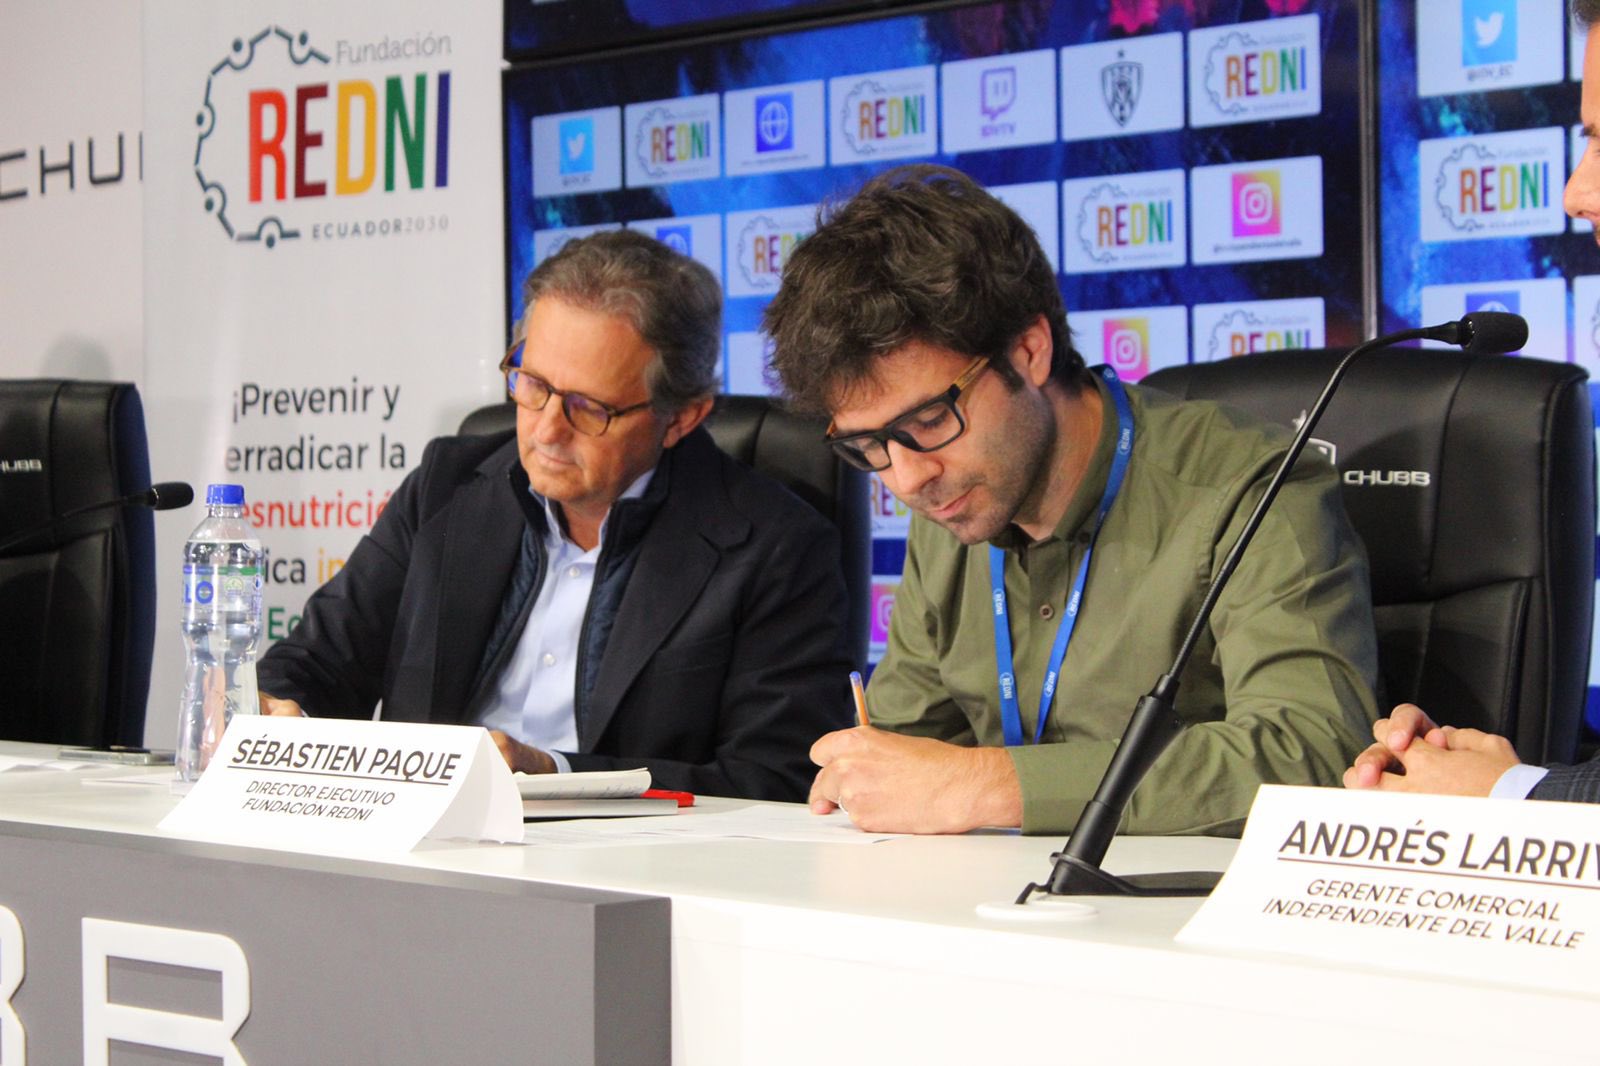 Franklin Tello, presidente de Independiente y Sébastien Paque, de la fundación Redni, durante la firma del convenio. Foto: IDV